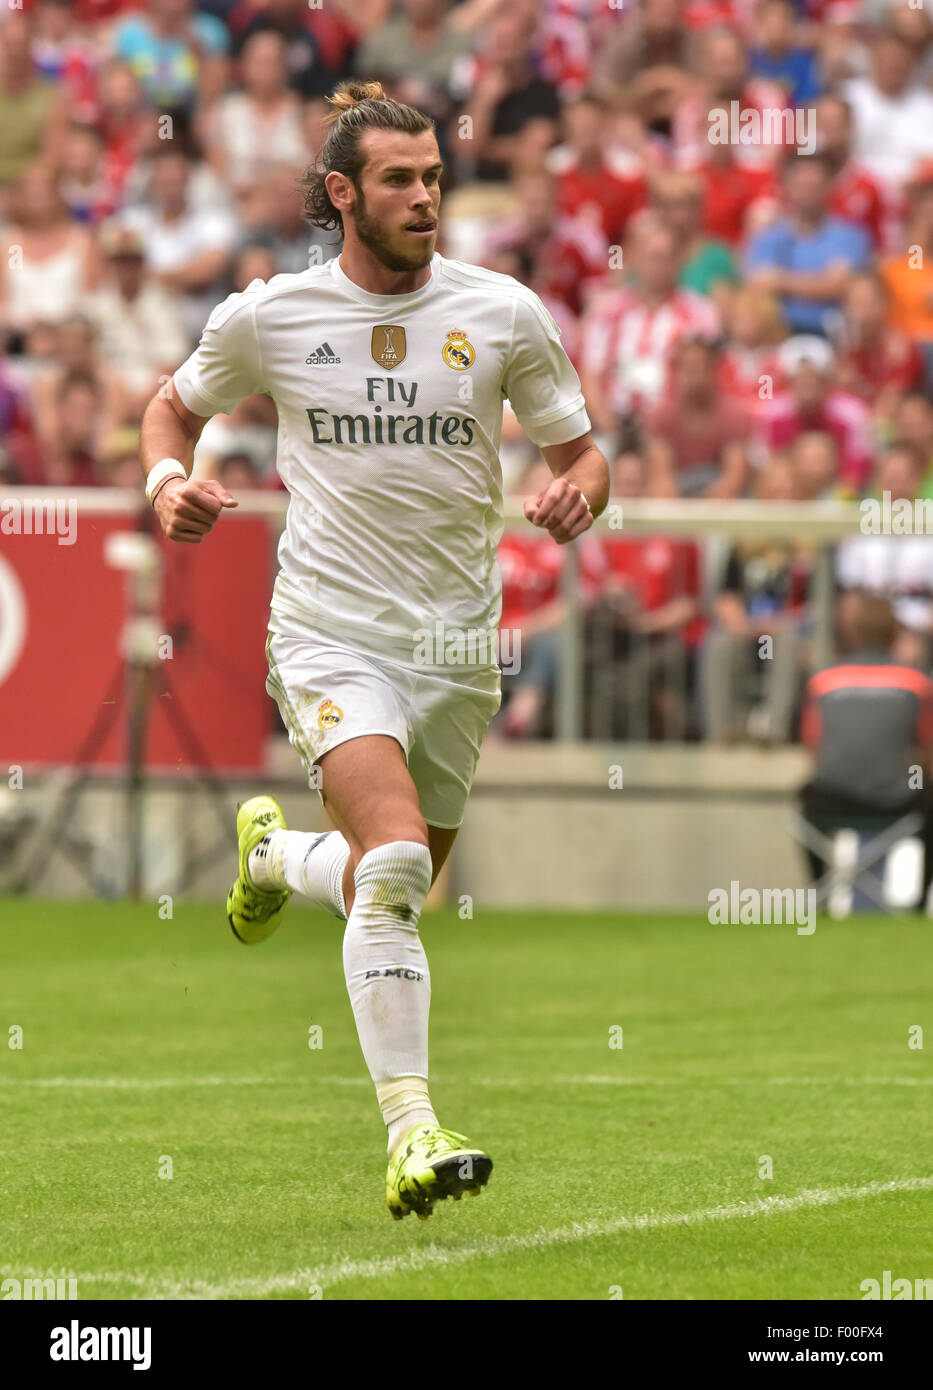 Munich, Alemania. 04 Aug, 2015. Real Madrid, Gareth Bale en acción durante la Copa Audi en Múnich, Alemania, 04 de agosto de 2015. Foto: Peter Kneffel/dpa/Alamy Live News Foto de stock